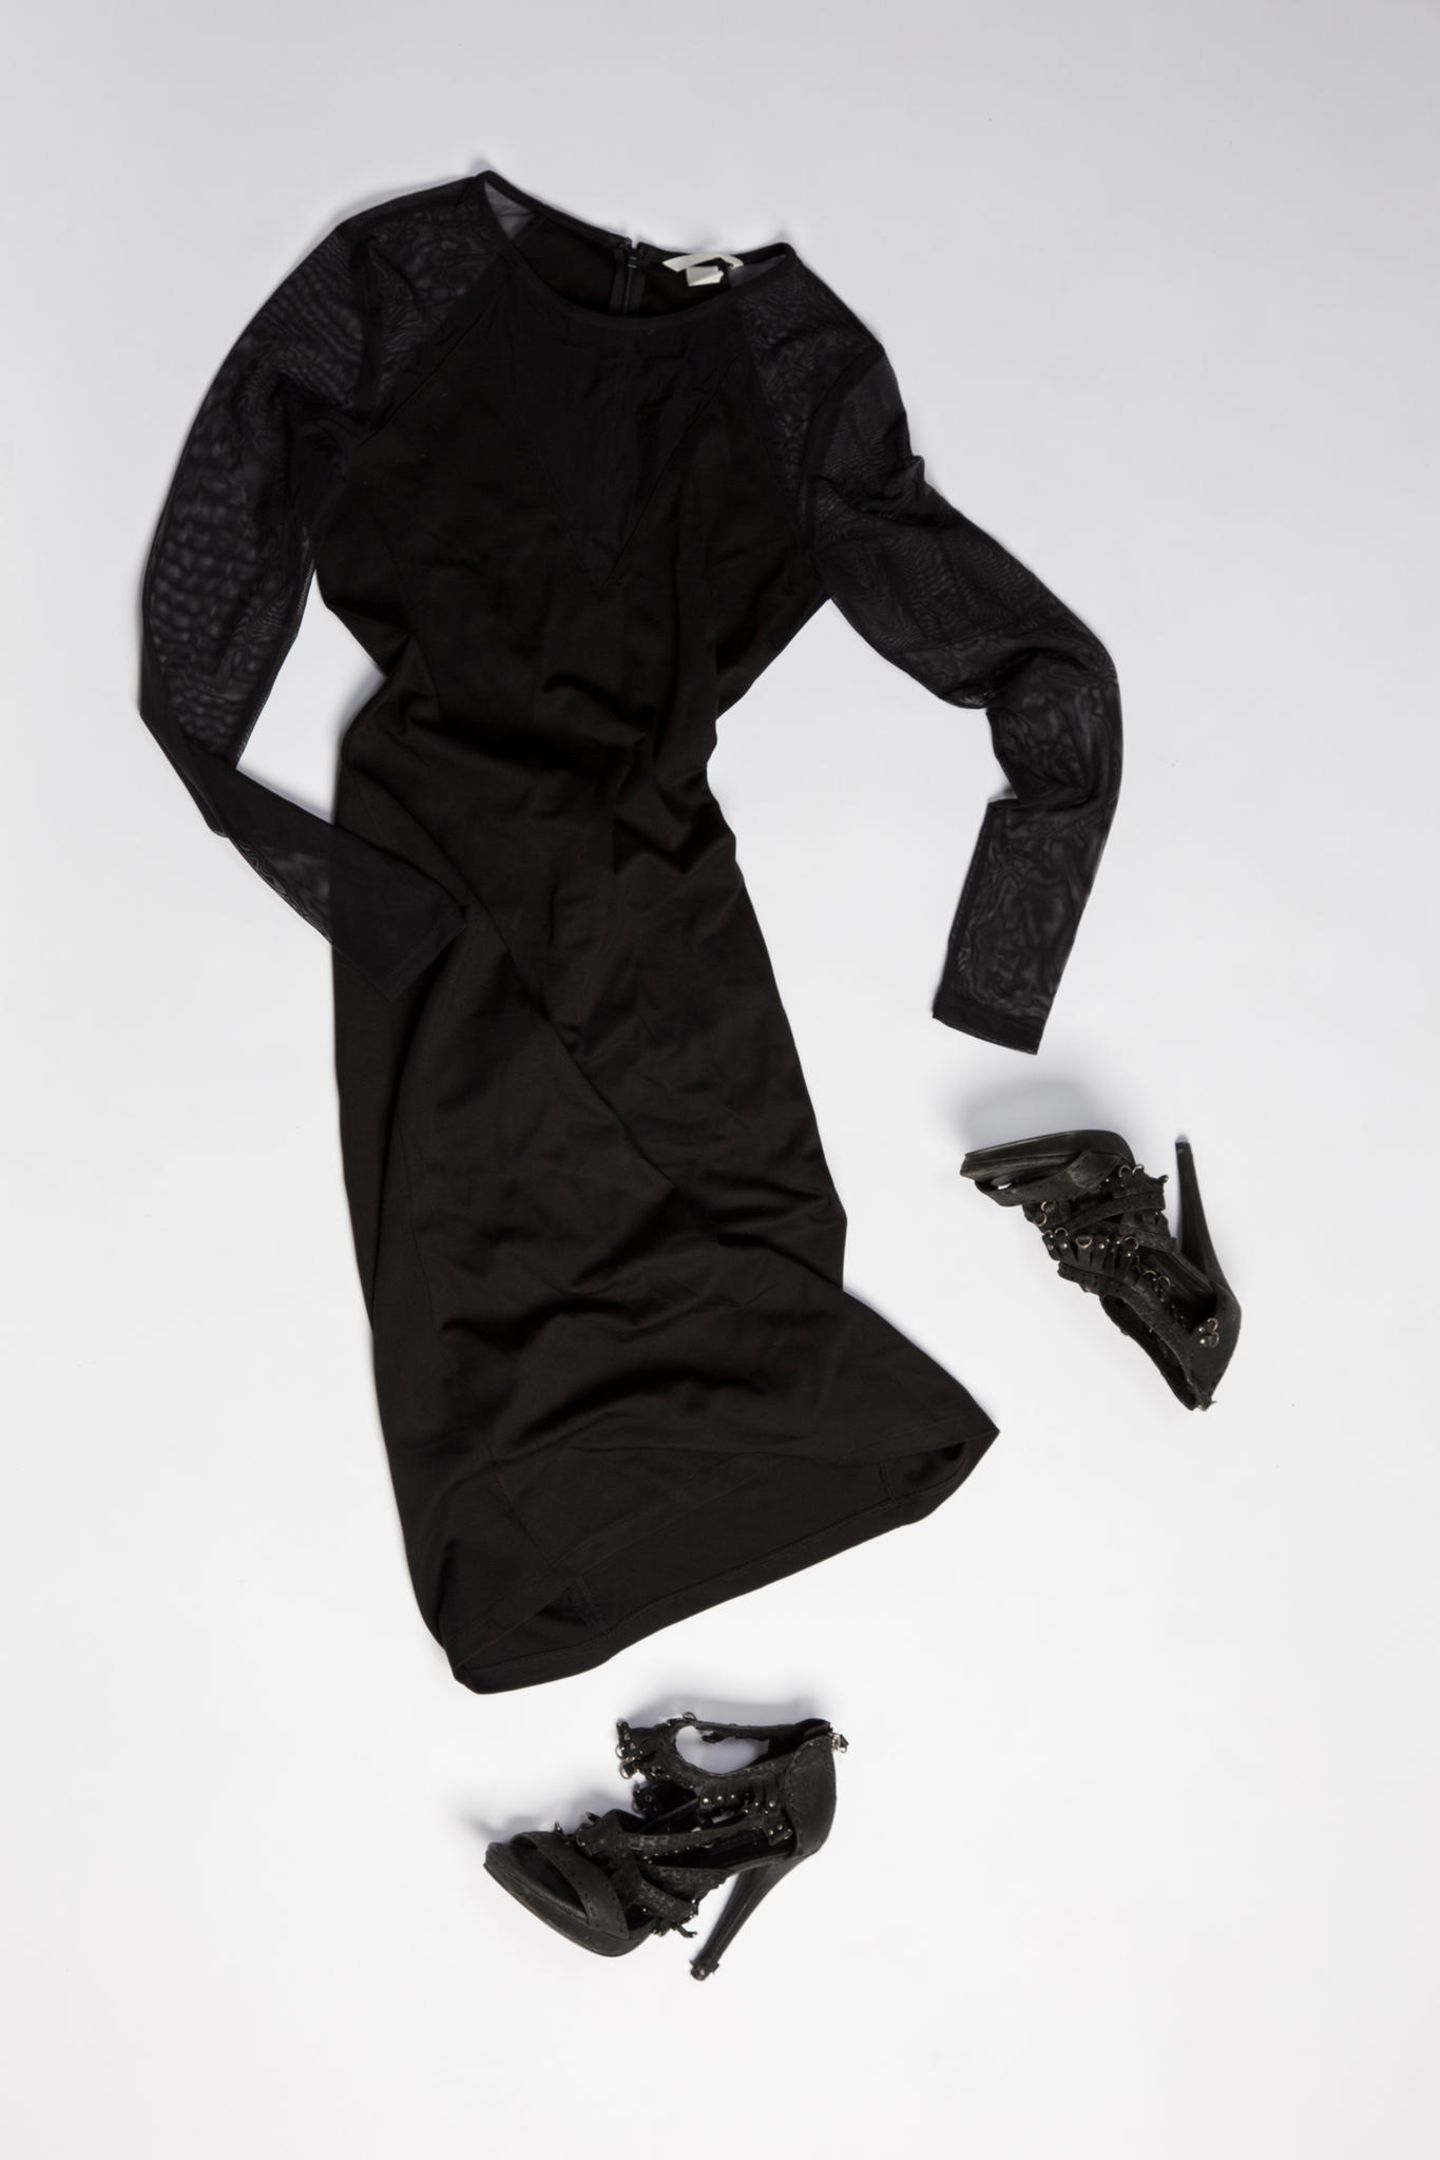 Ausstellung: schwarzes Kleid mit Schuhen